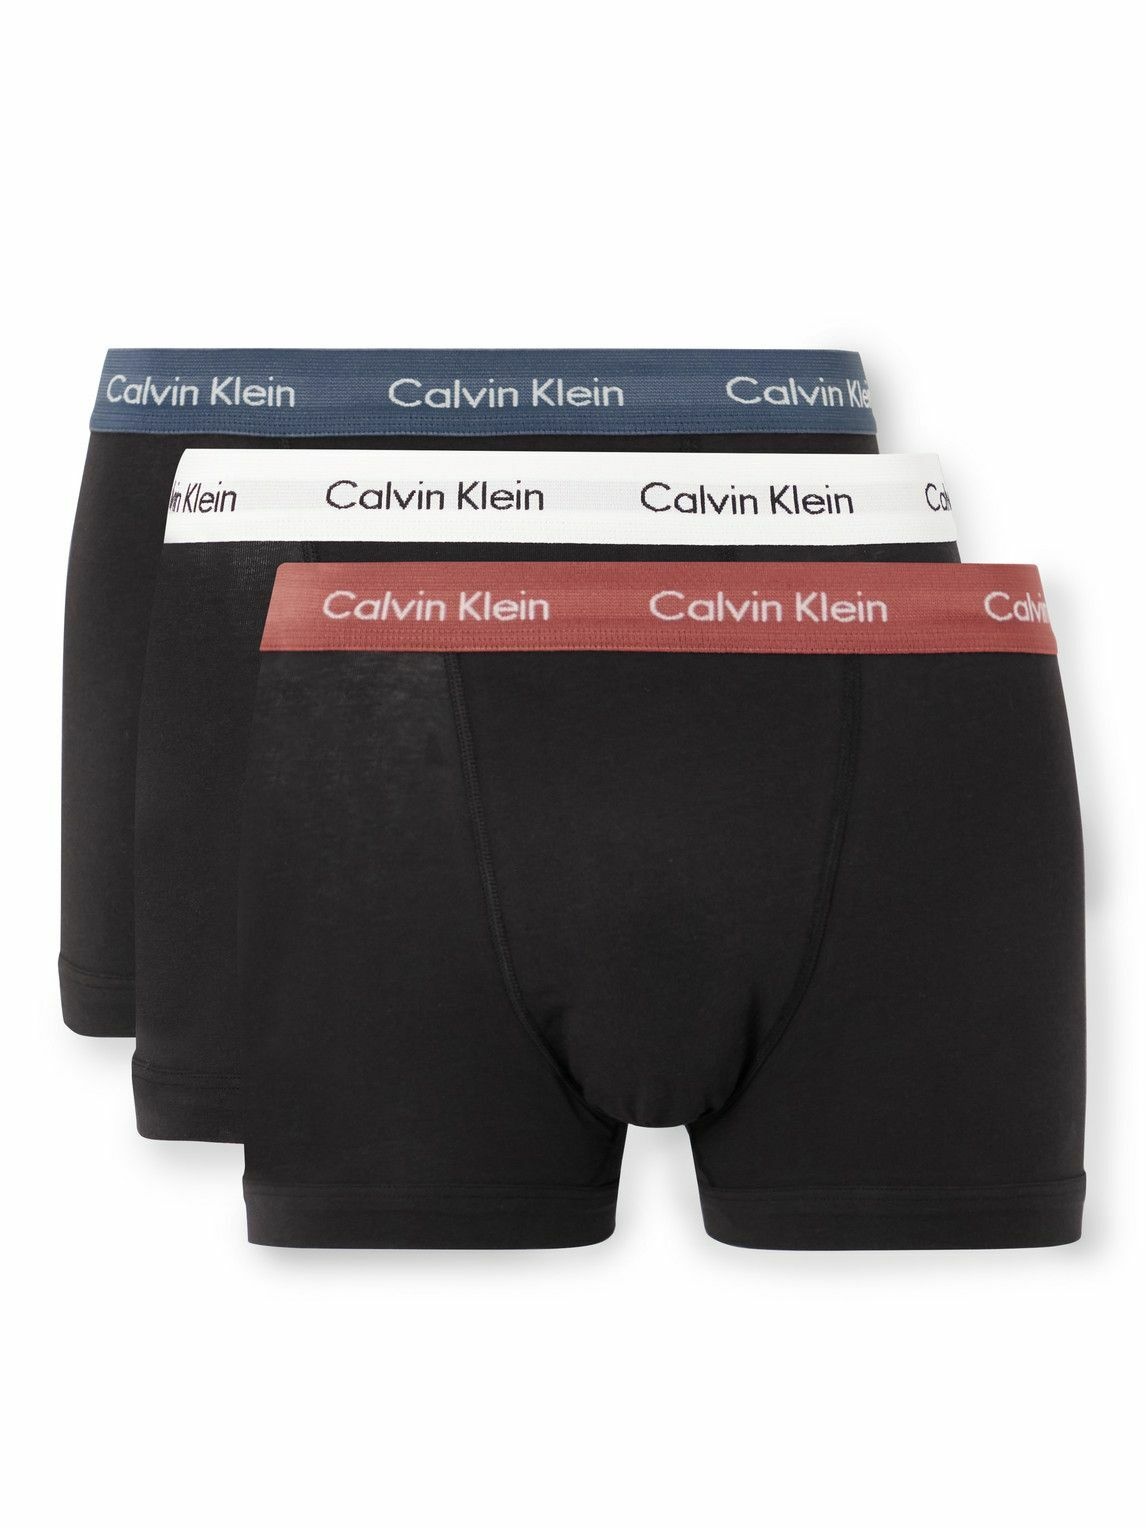 Black Pack of three cotton-blend short boxer briefs, Calvin Klein Underwear